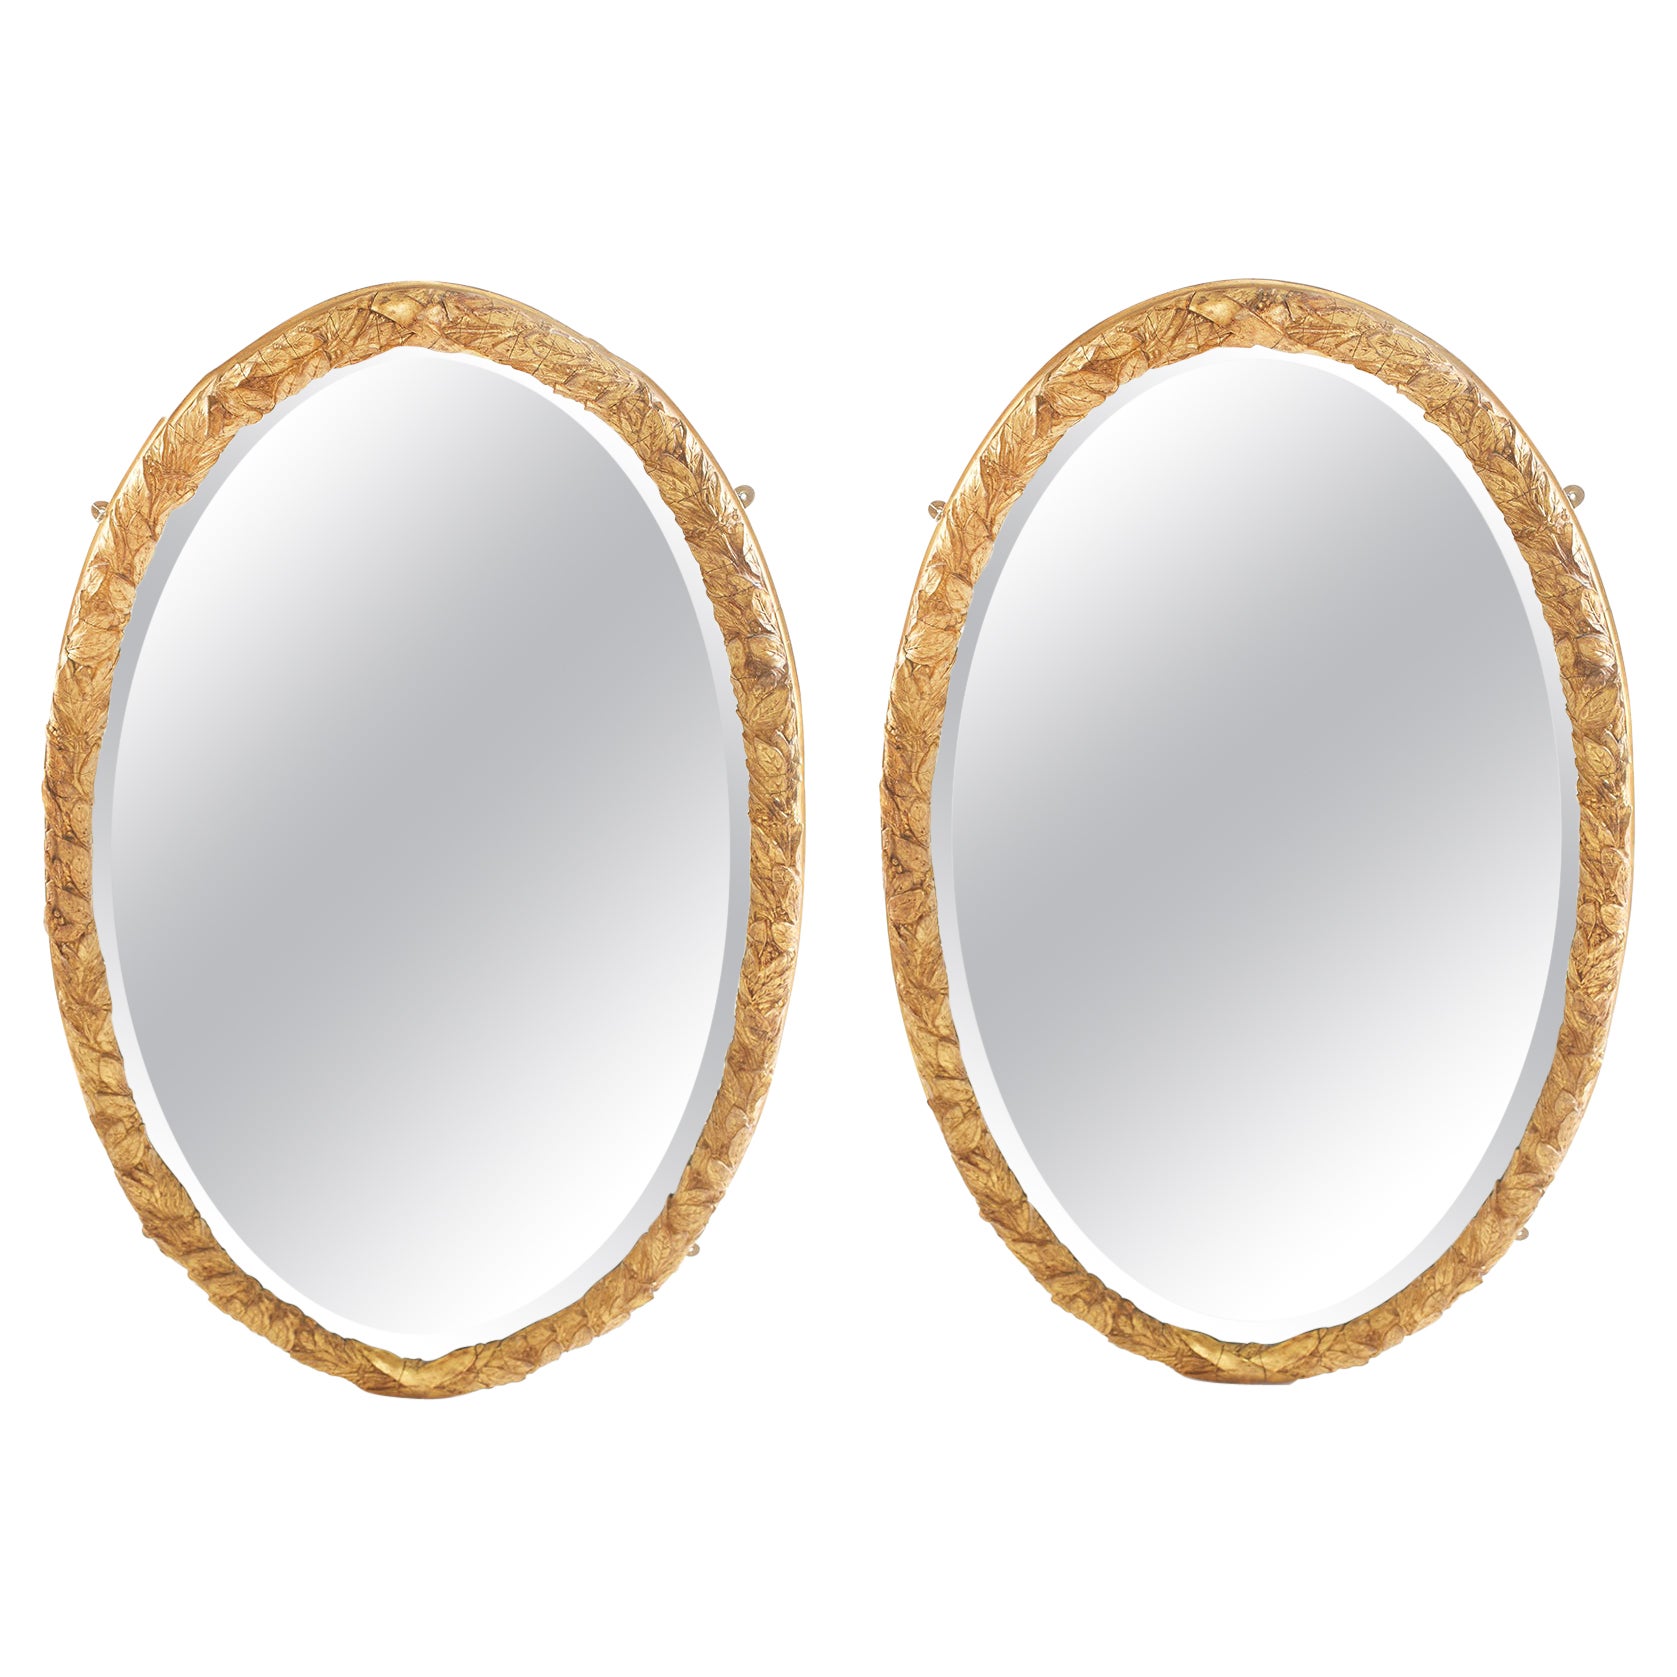 Paire de miroirs biseautés encadrés en Wood Wood doré